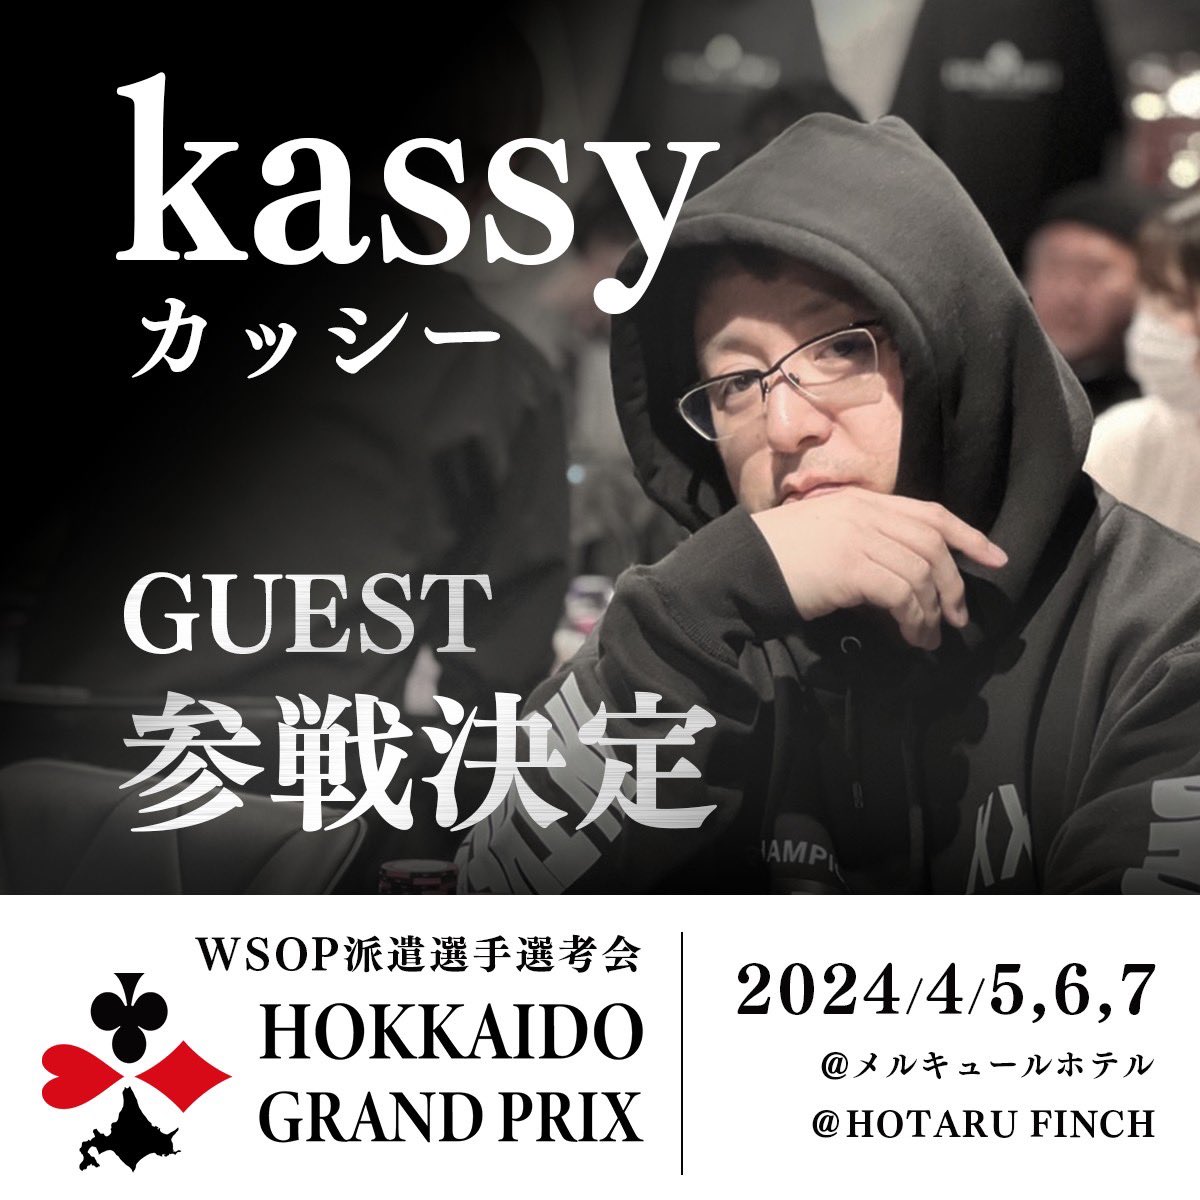 Hokkaido Grand Prix Kassy